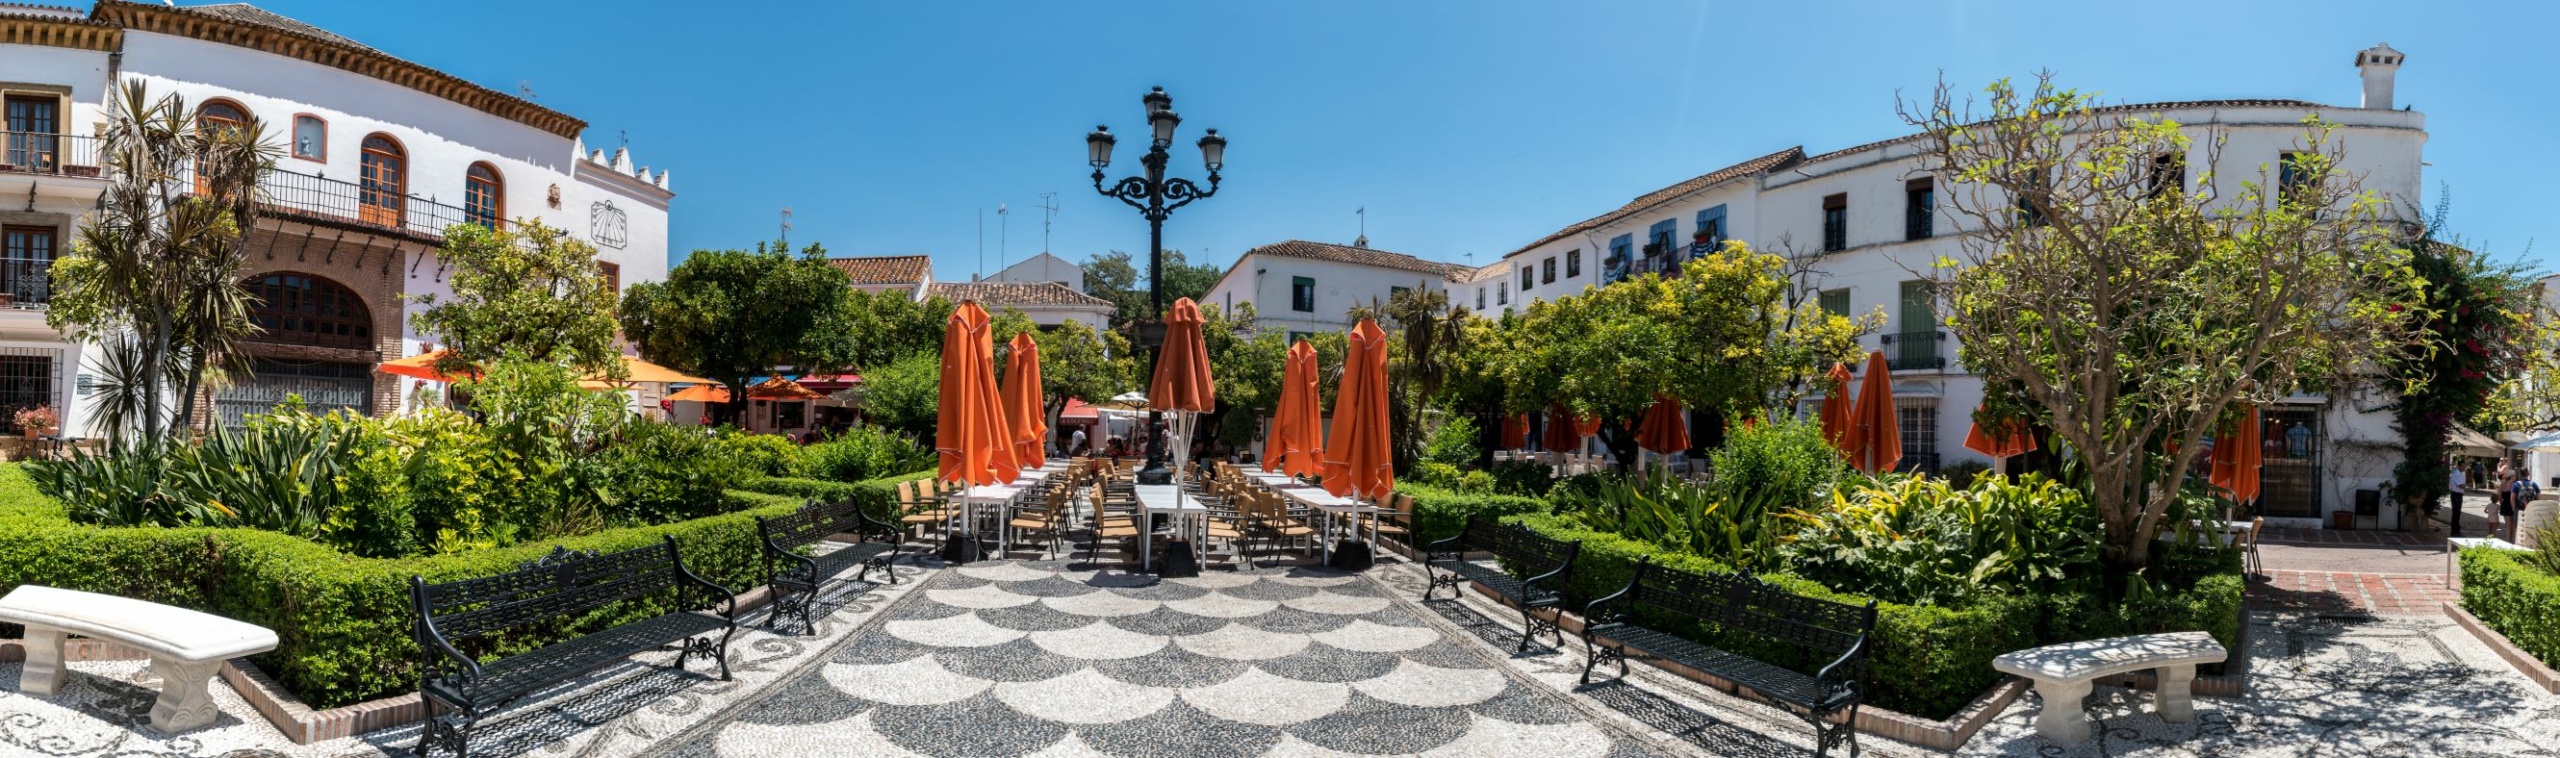 Plaza de los Naranjos in Marbella 